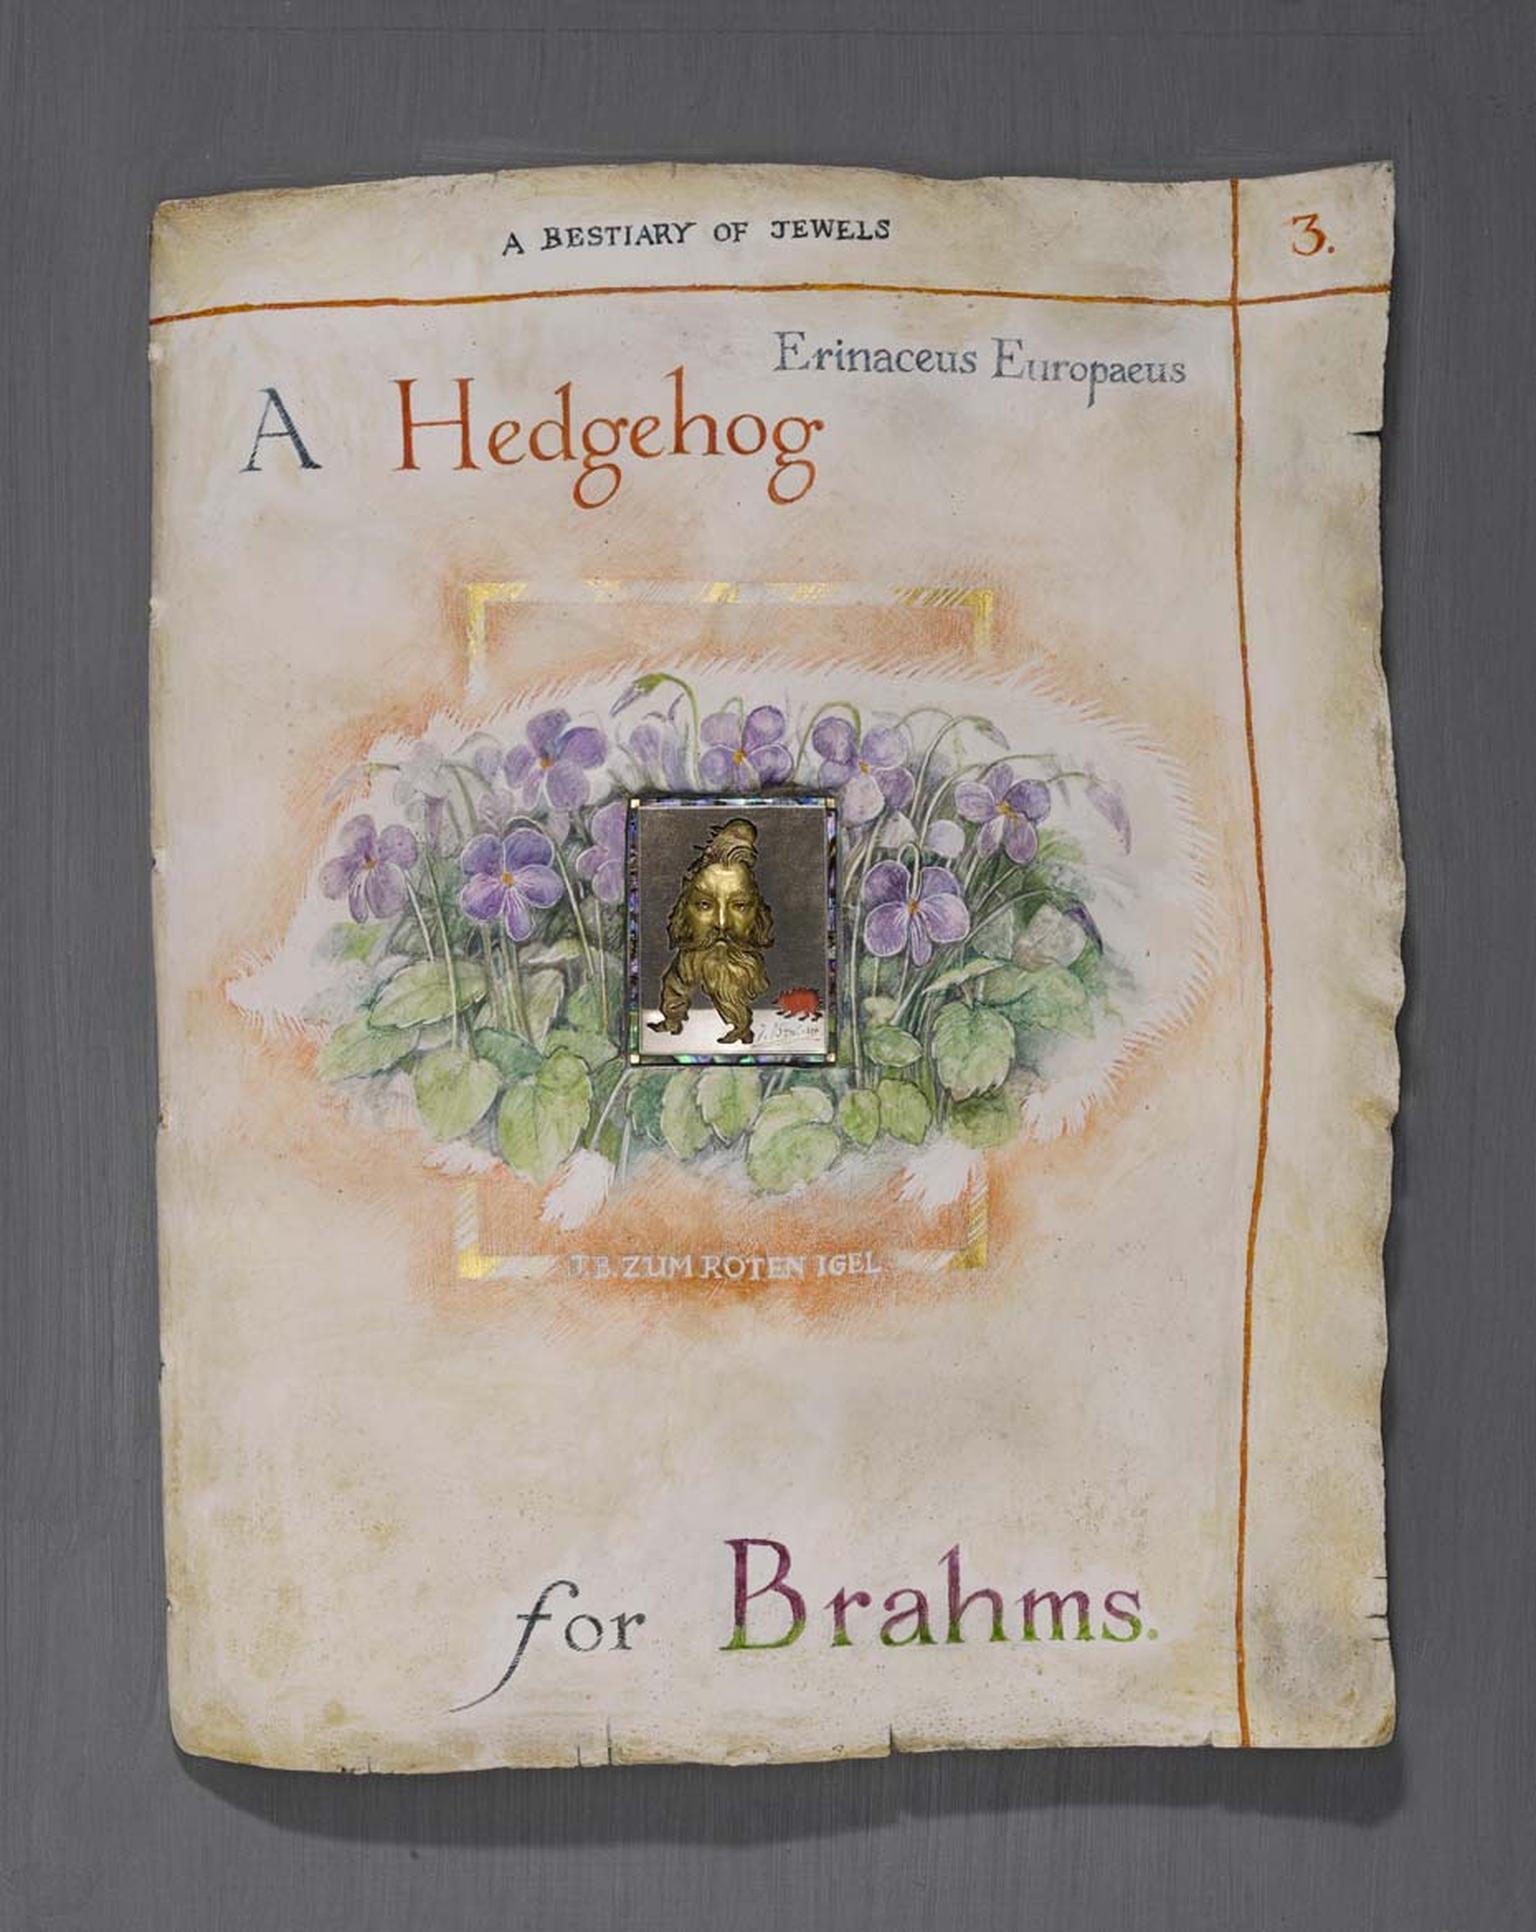 Kevin Coates 'A Hedgehog for Brahms' 2005 brooch